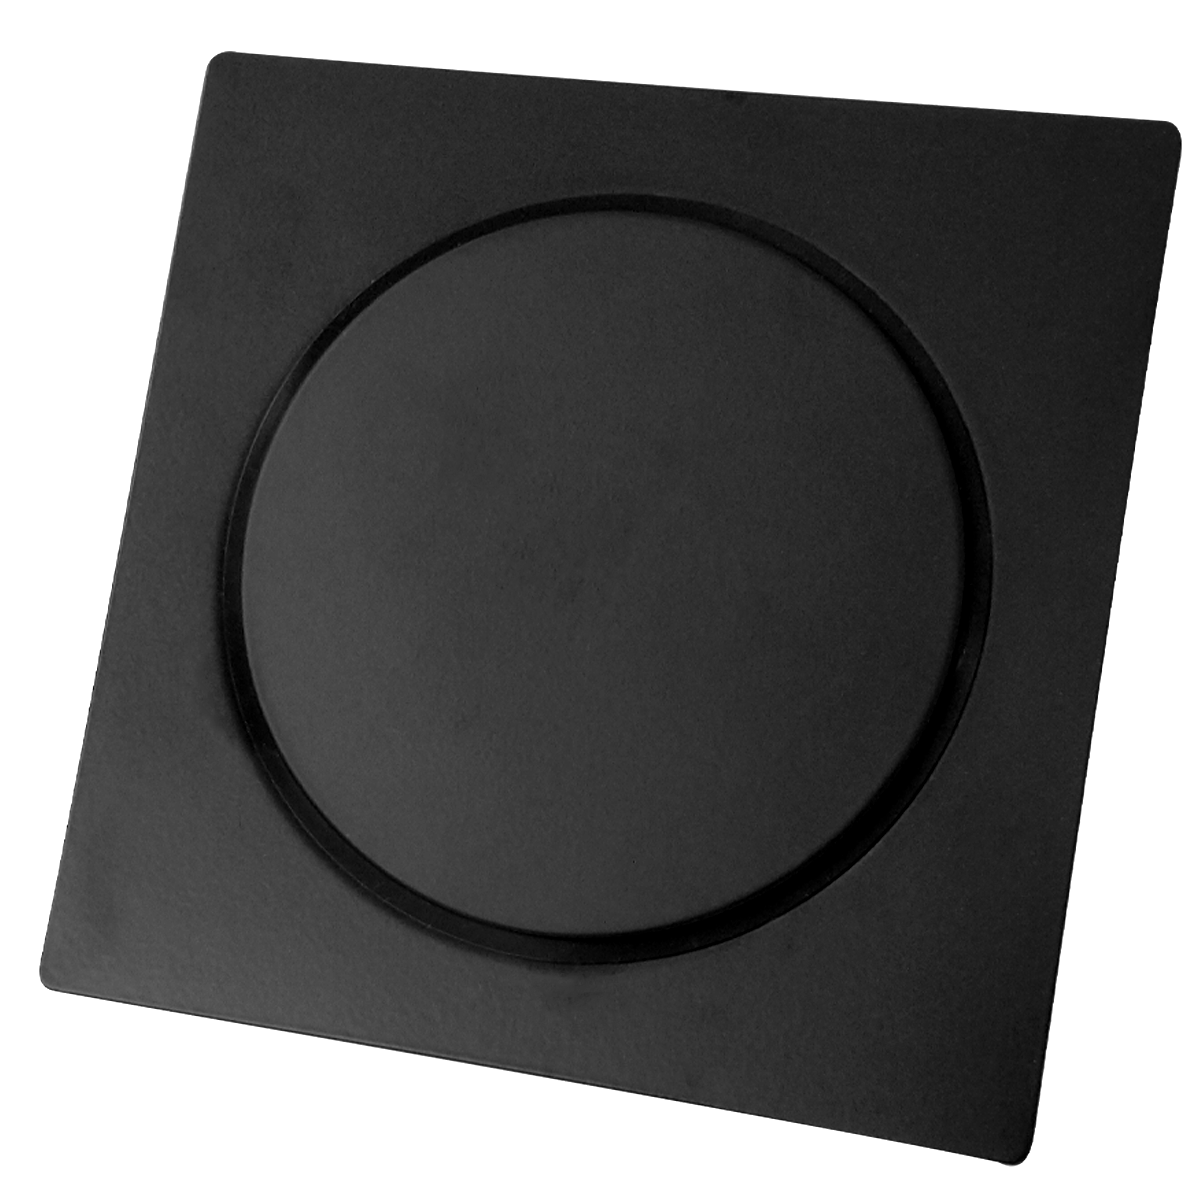 Ralo Click Quadrado 15x15cm Black